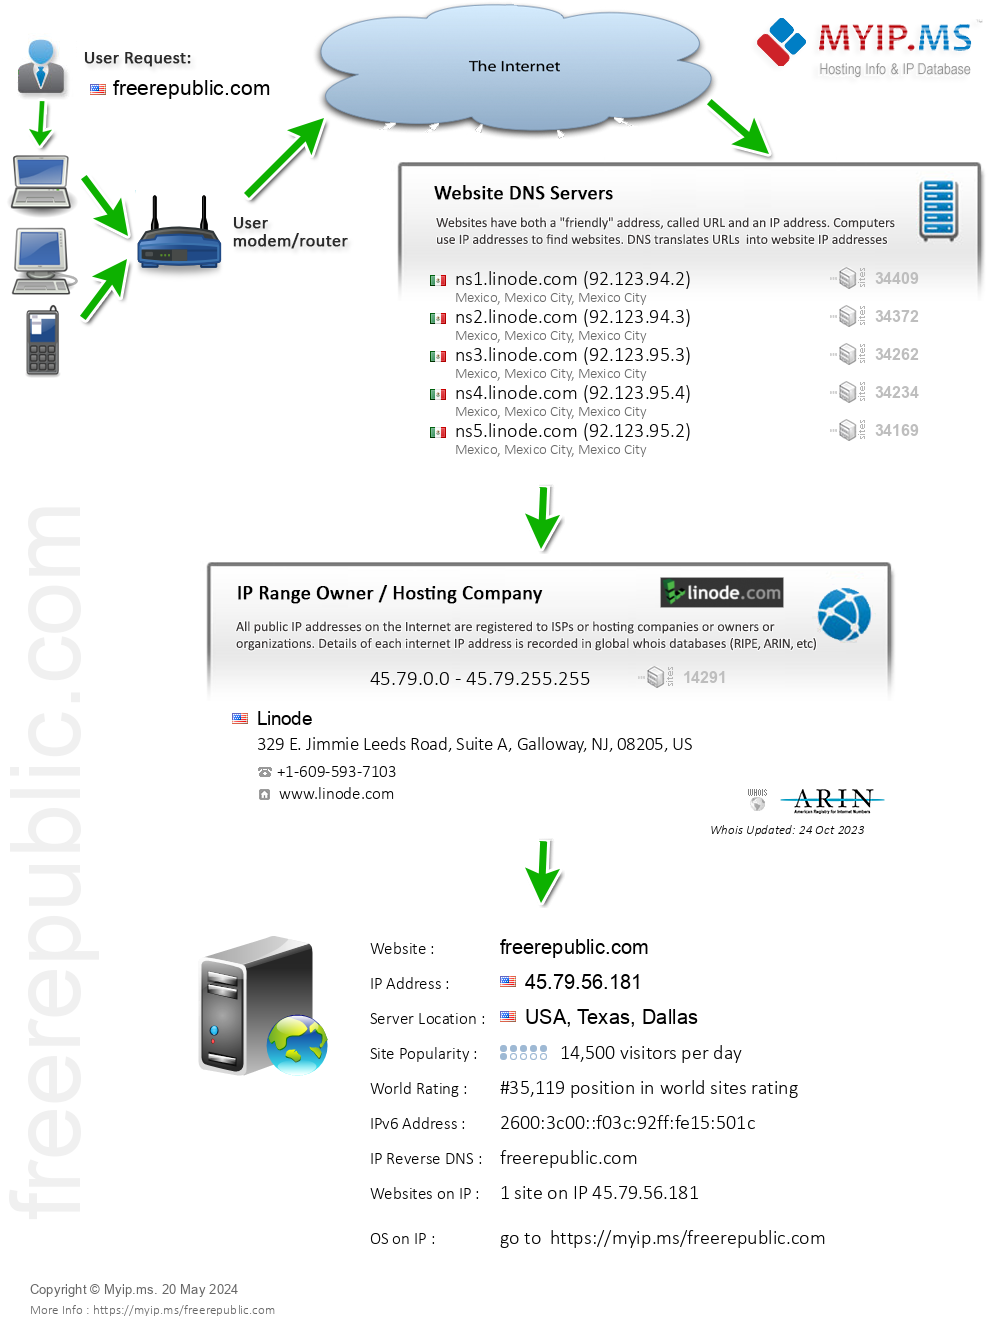 Freerepublic.com - Website Hosting Visual IP Diagram